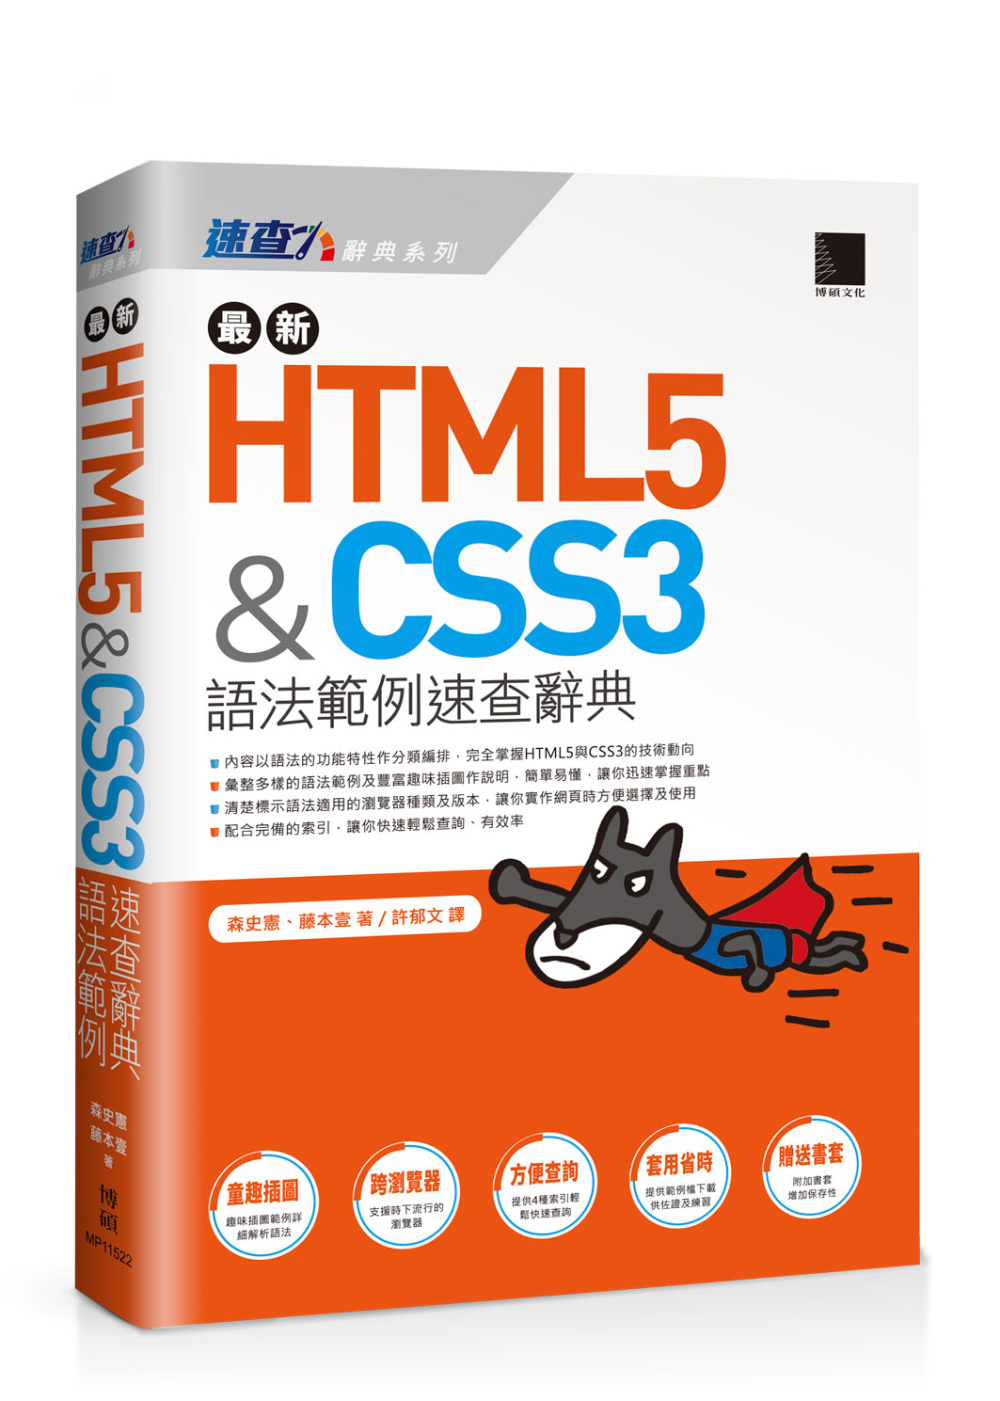 最新HTML5&CSS3;語法範例速查辭典